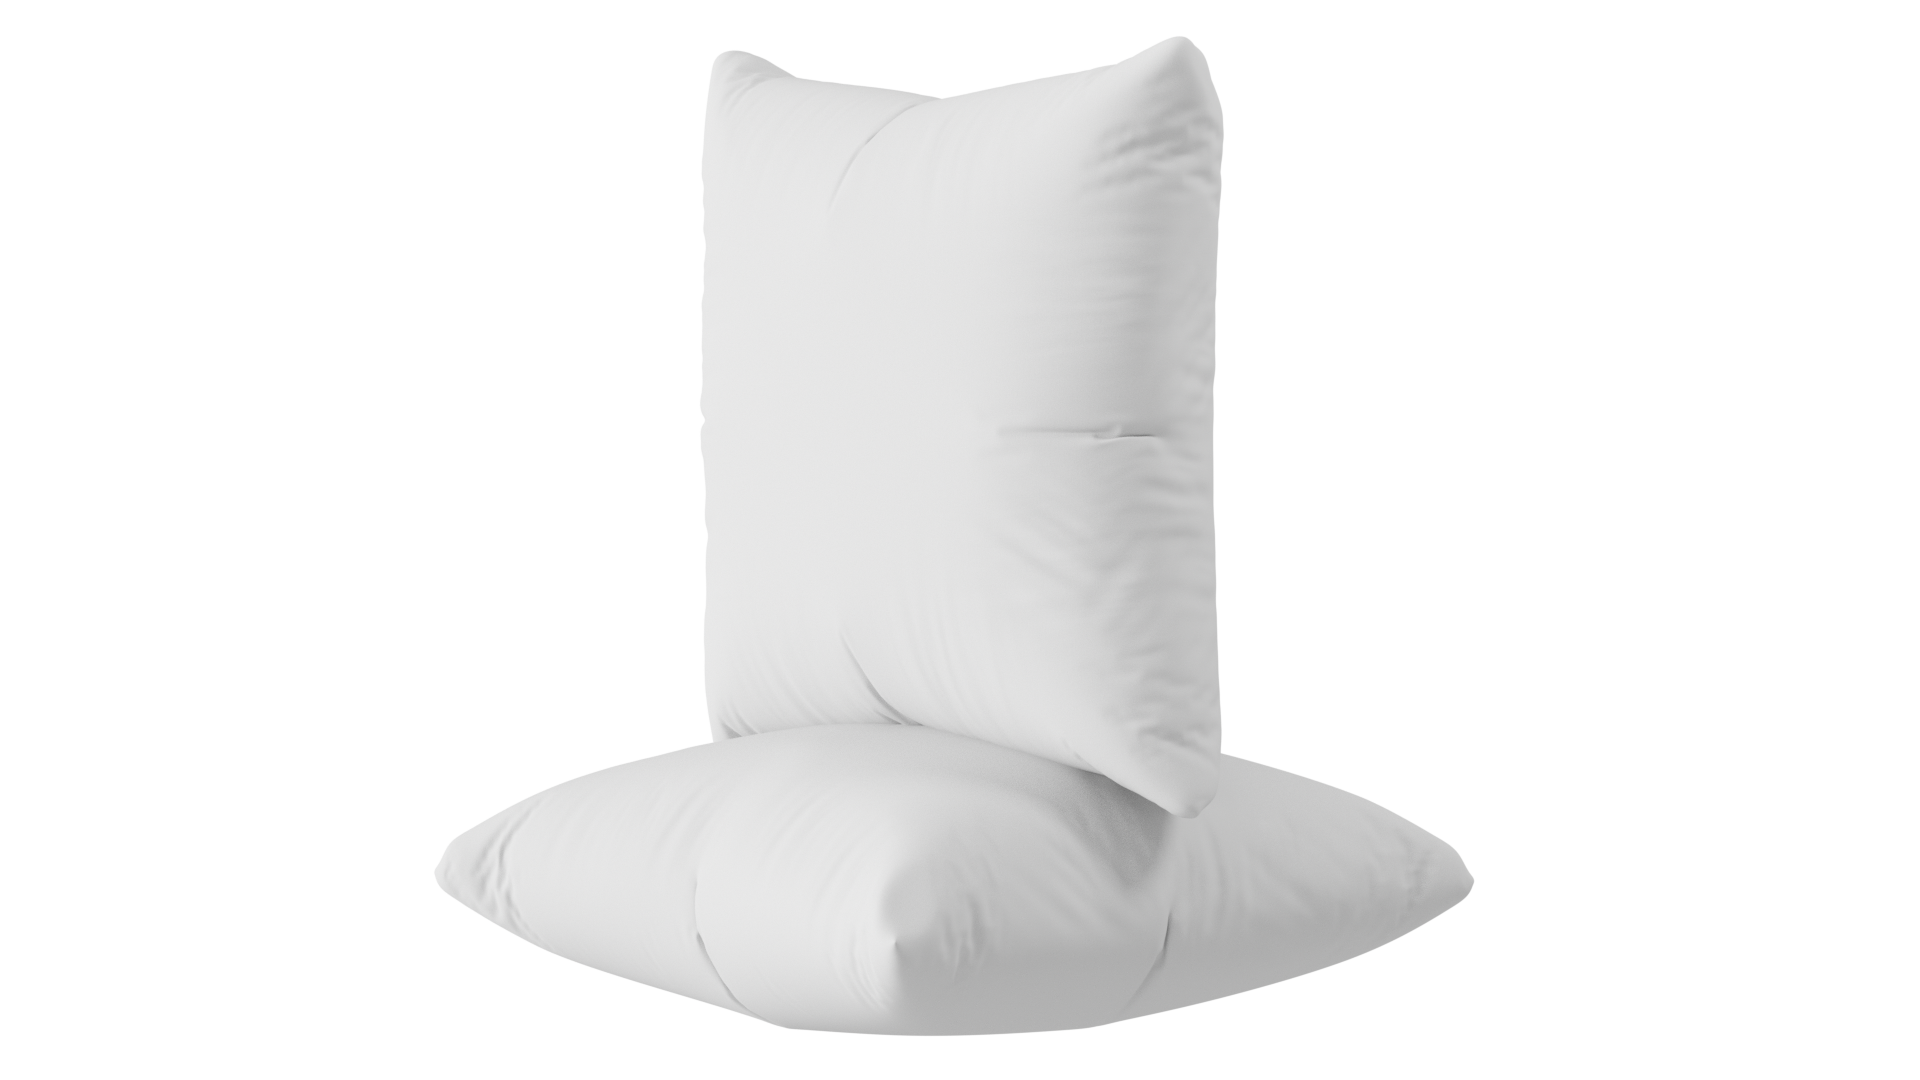 Utopia Bedding Throw Pillow Insert, White - 1 Piece Only